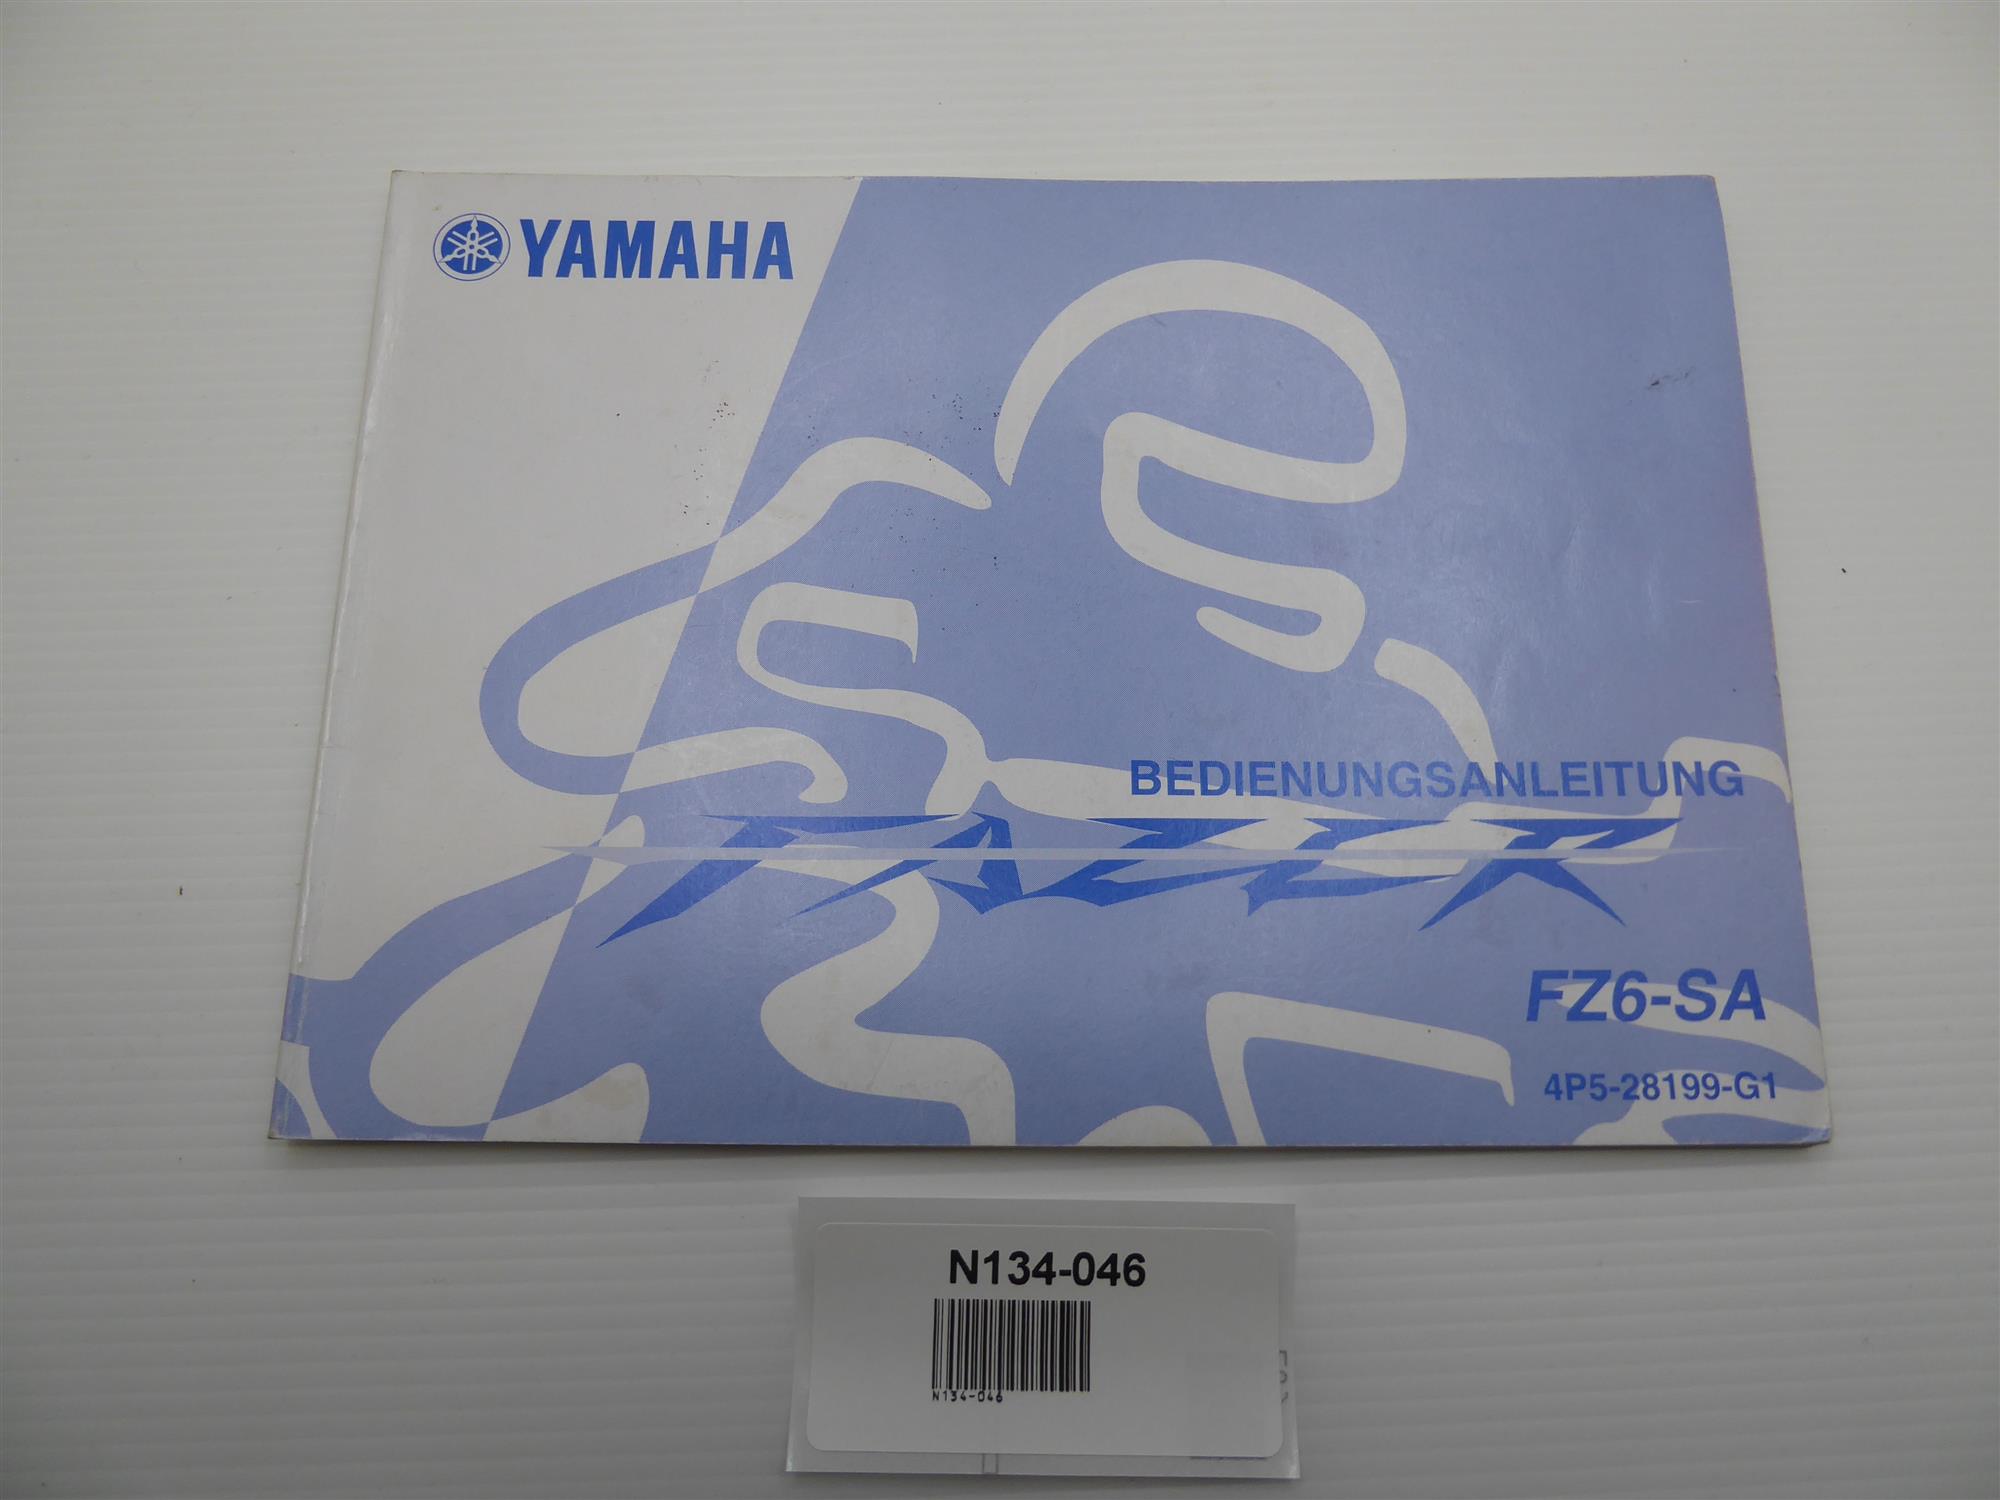 Yamaha FZ6-SA Bedienungsanleitung 4P5-28199-G1